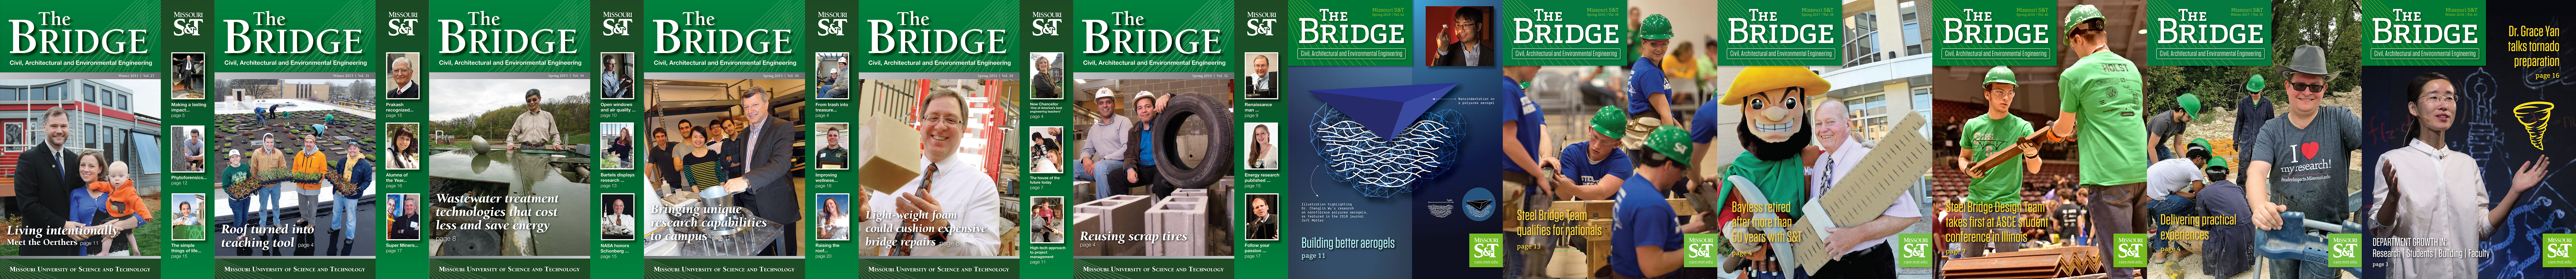 The Bridge Newsletter